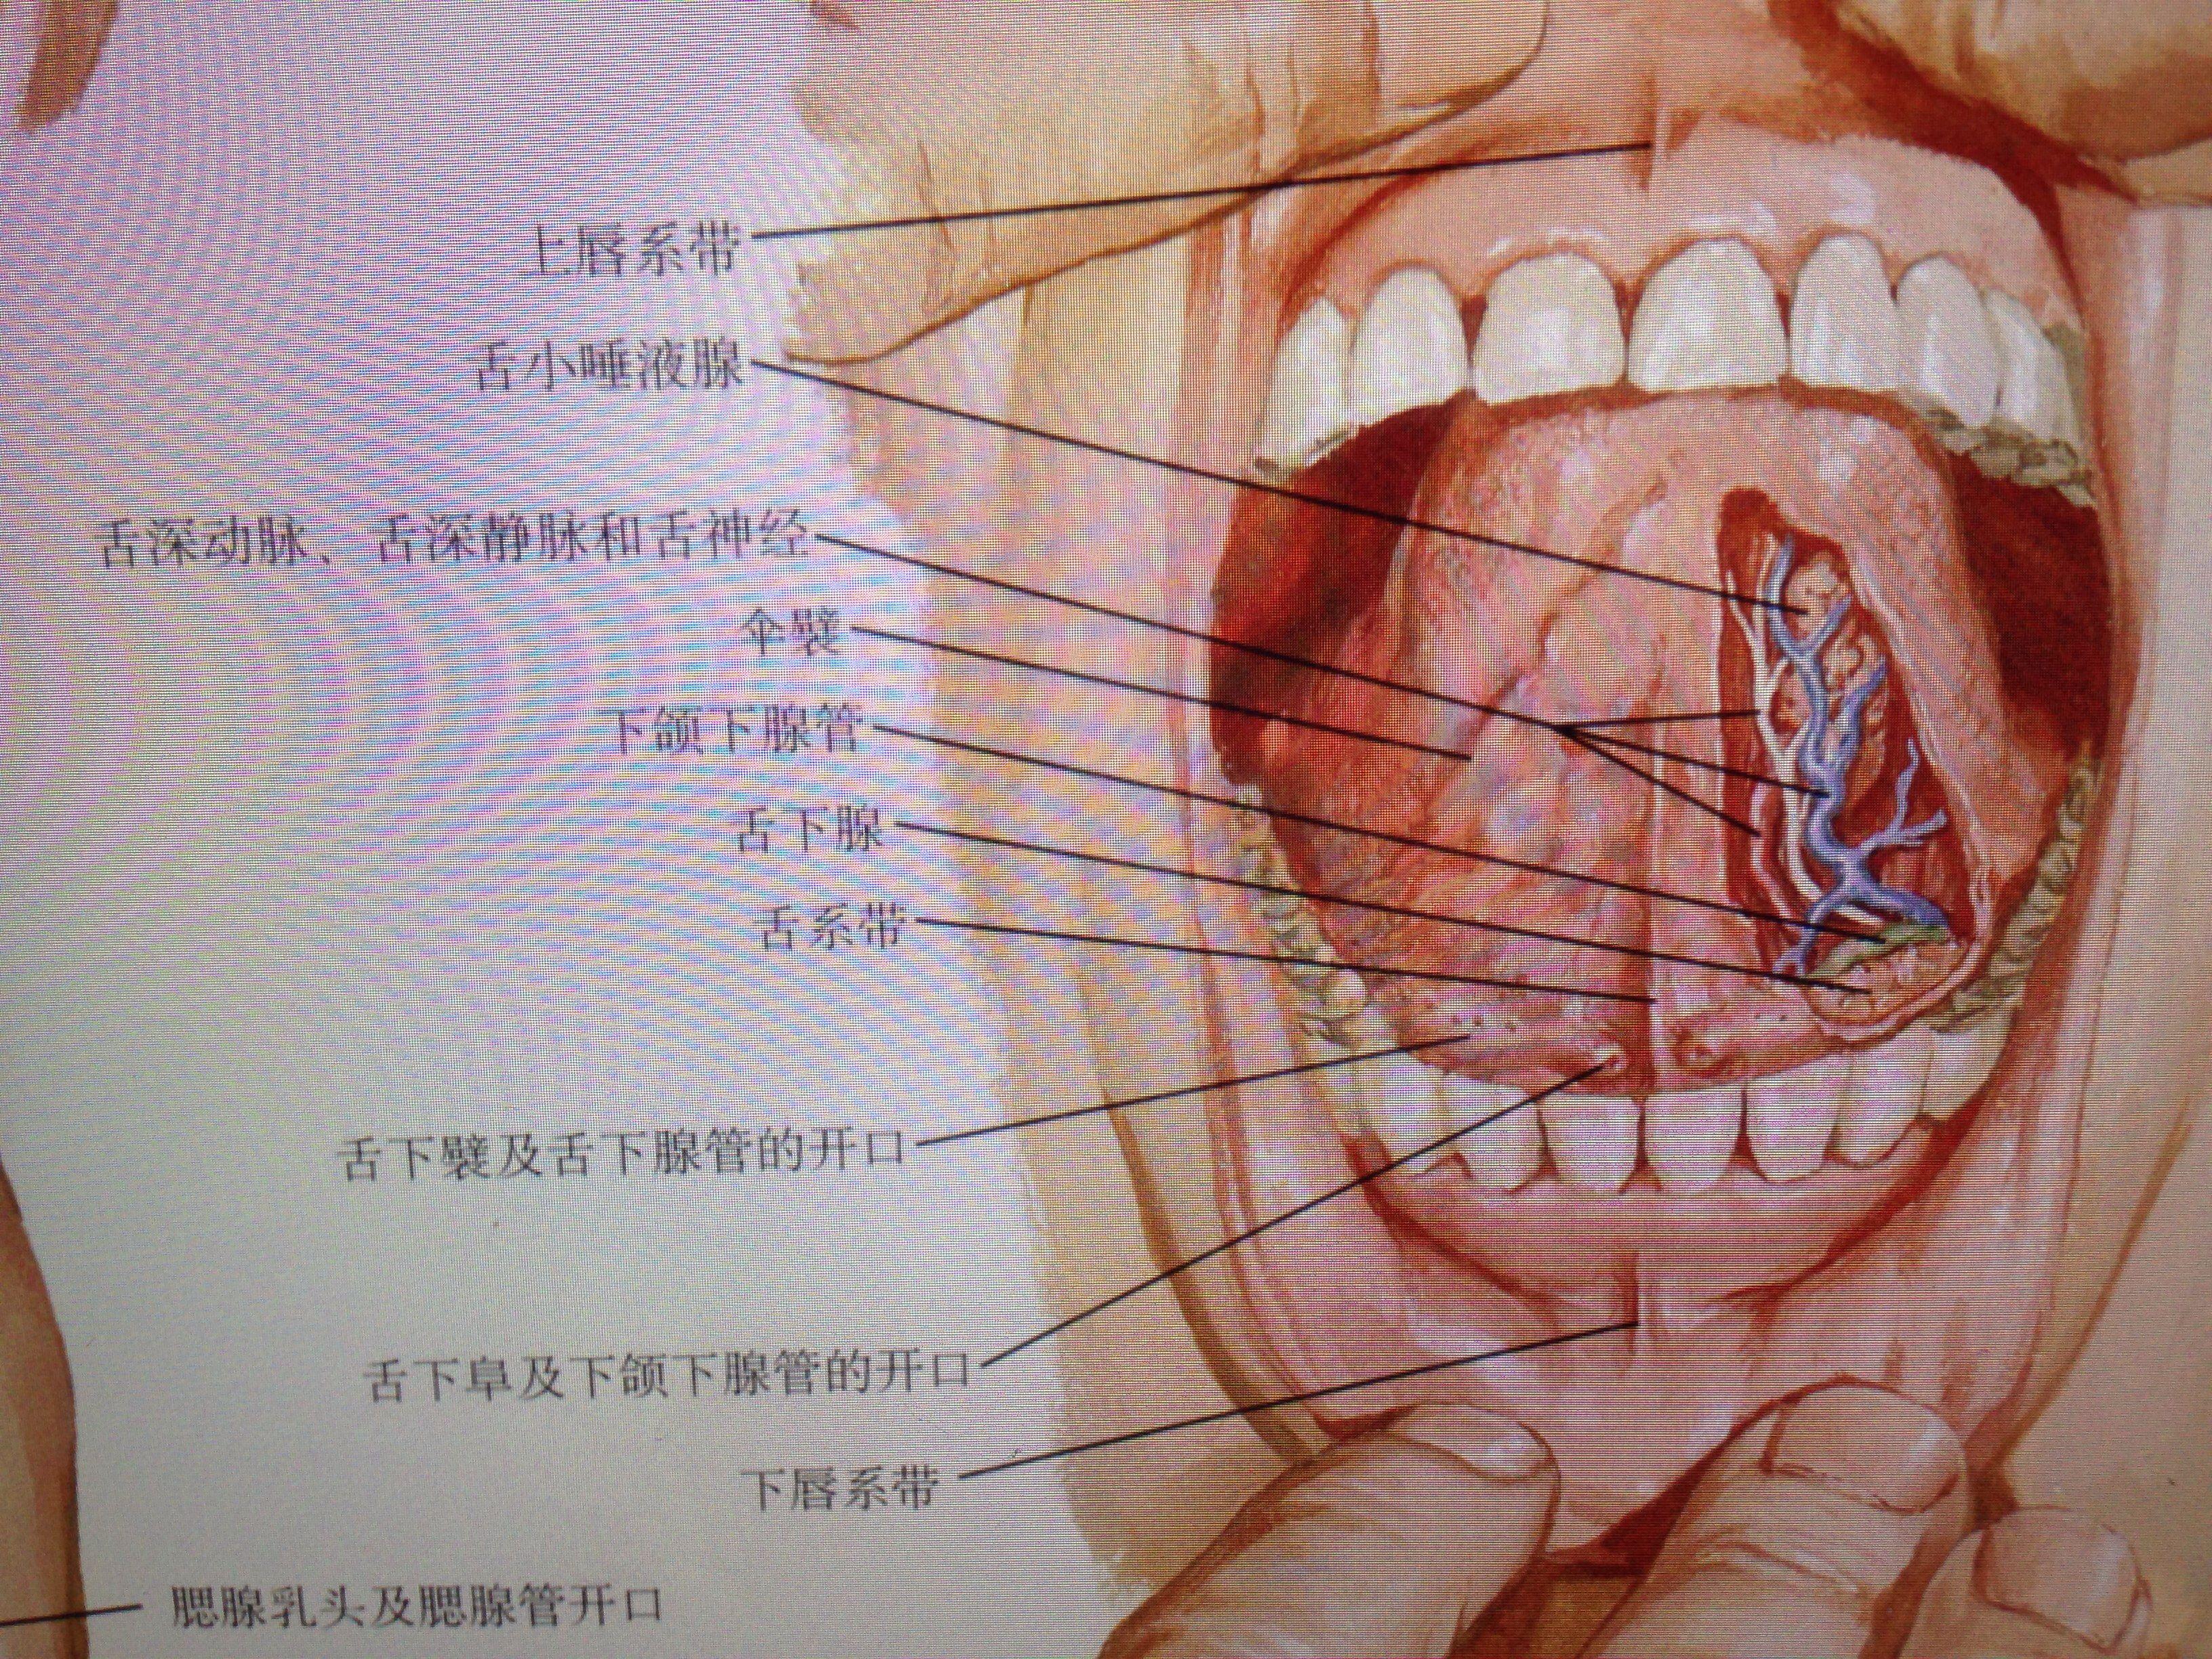 腮腺导管位置图片